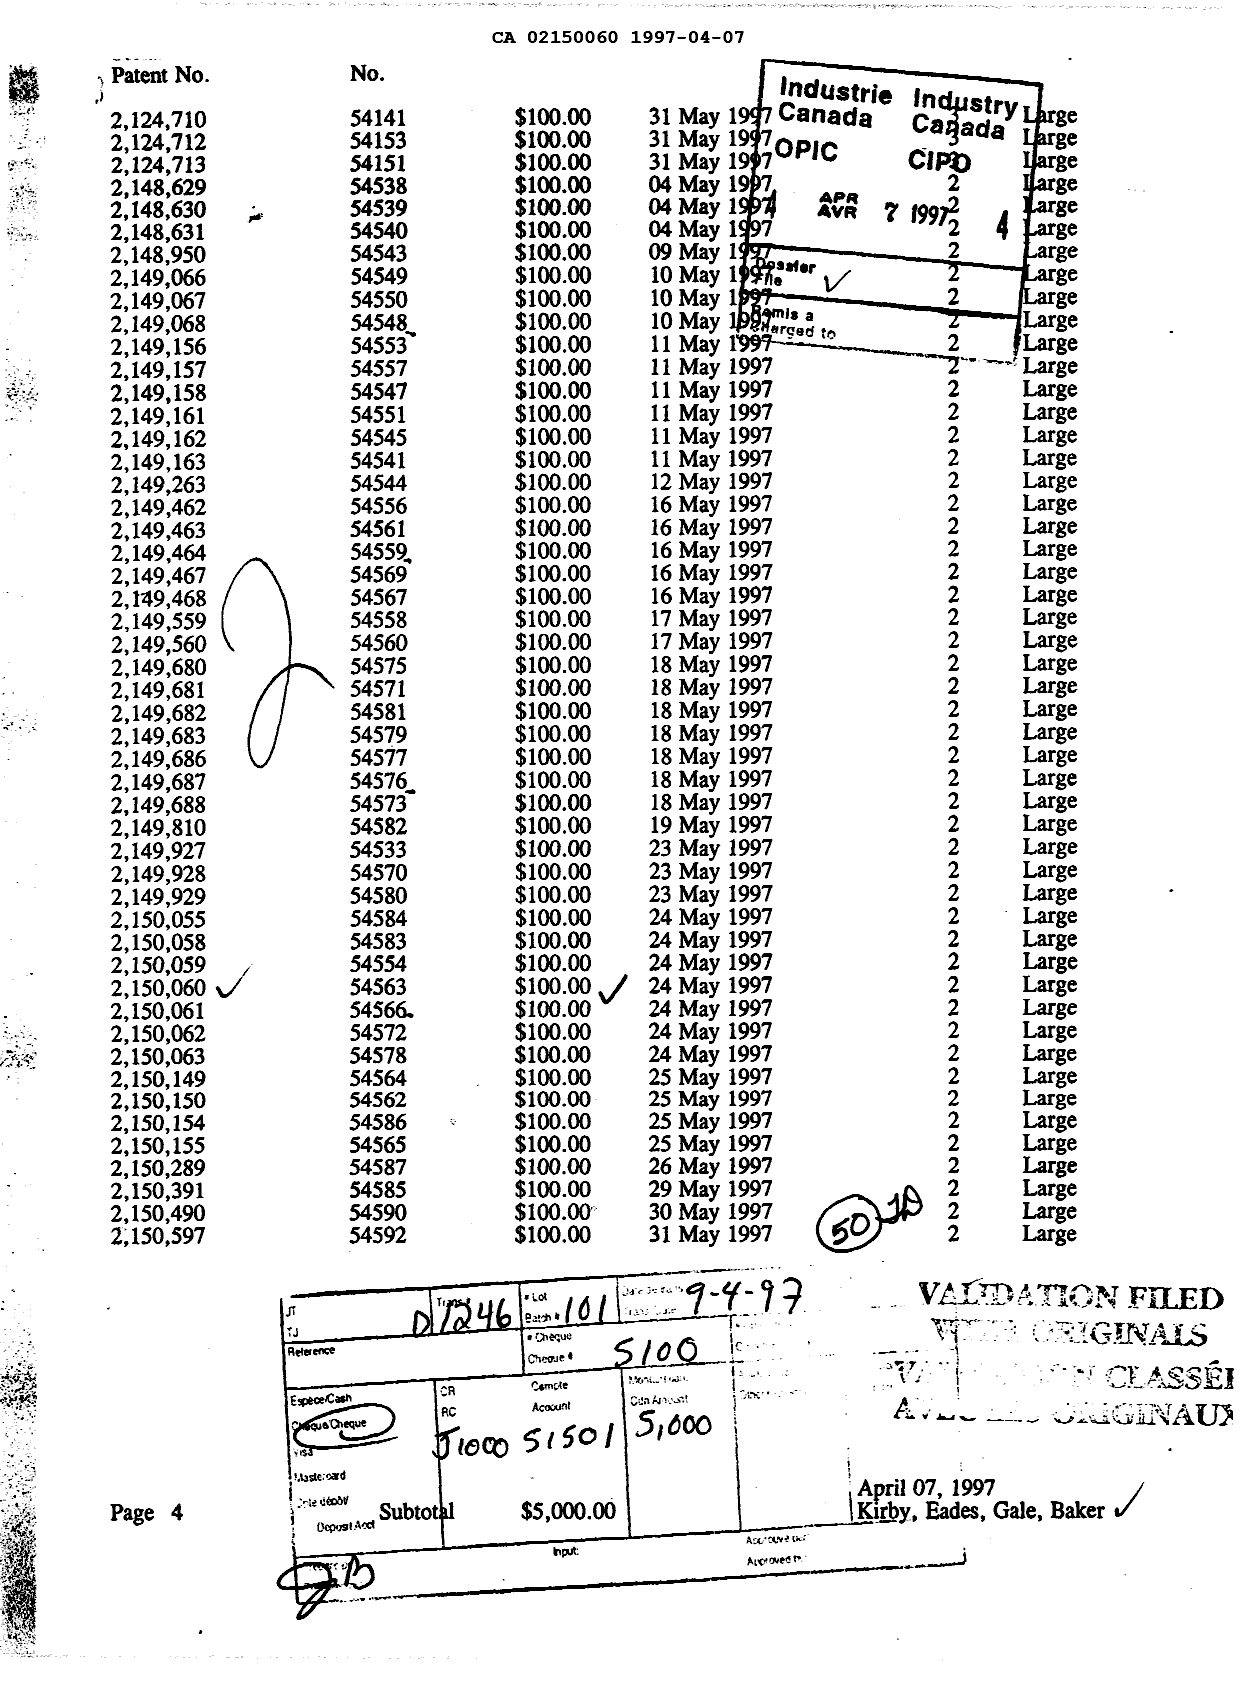 Document de brevet canadien 2150060. Taxes 19970407. Image 1 de 1